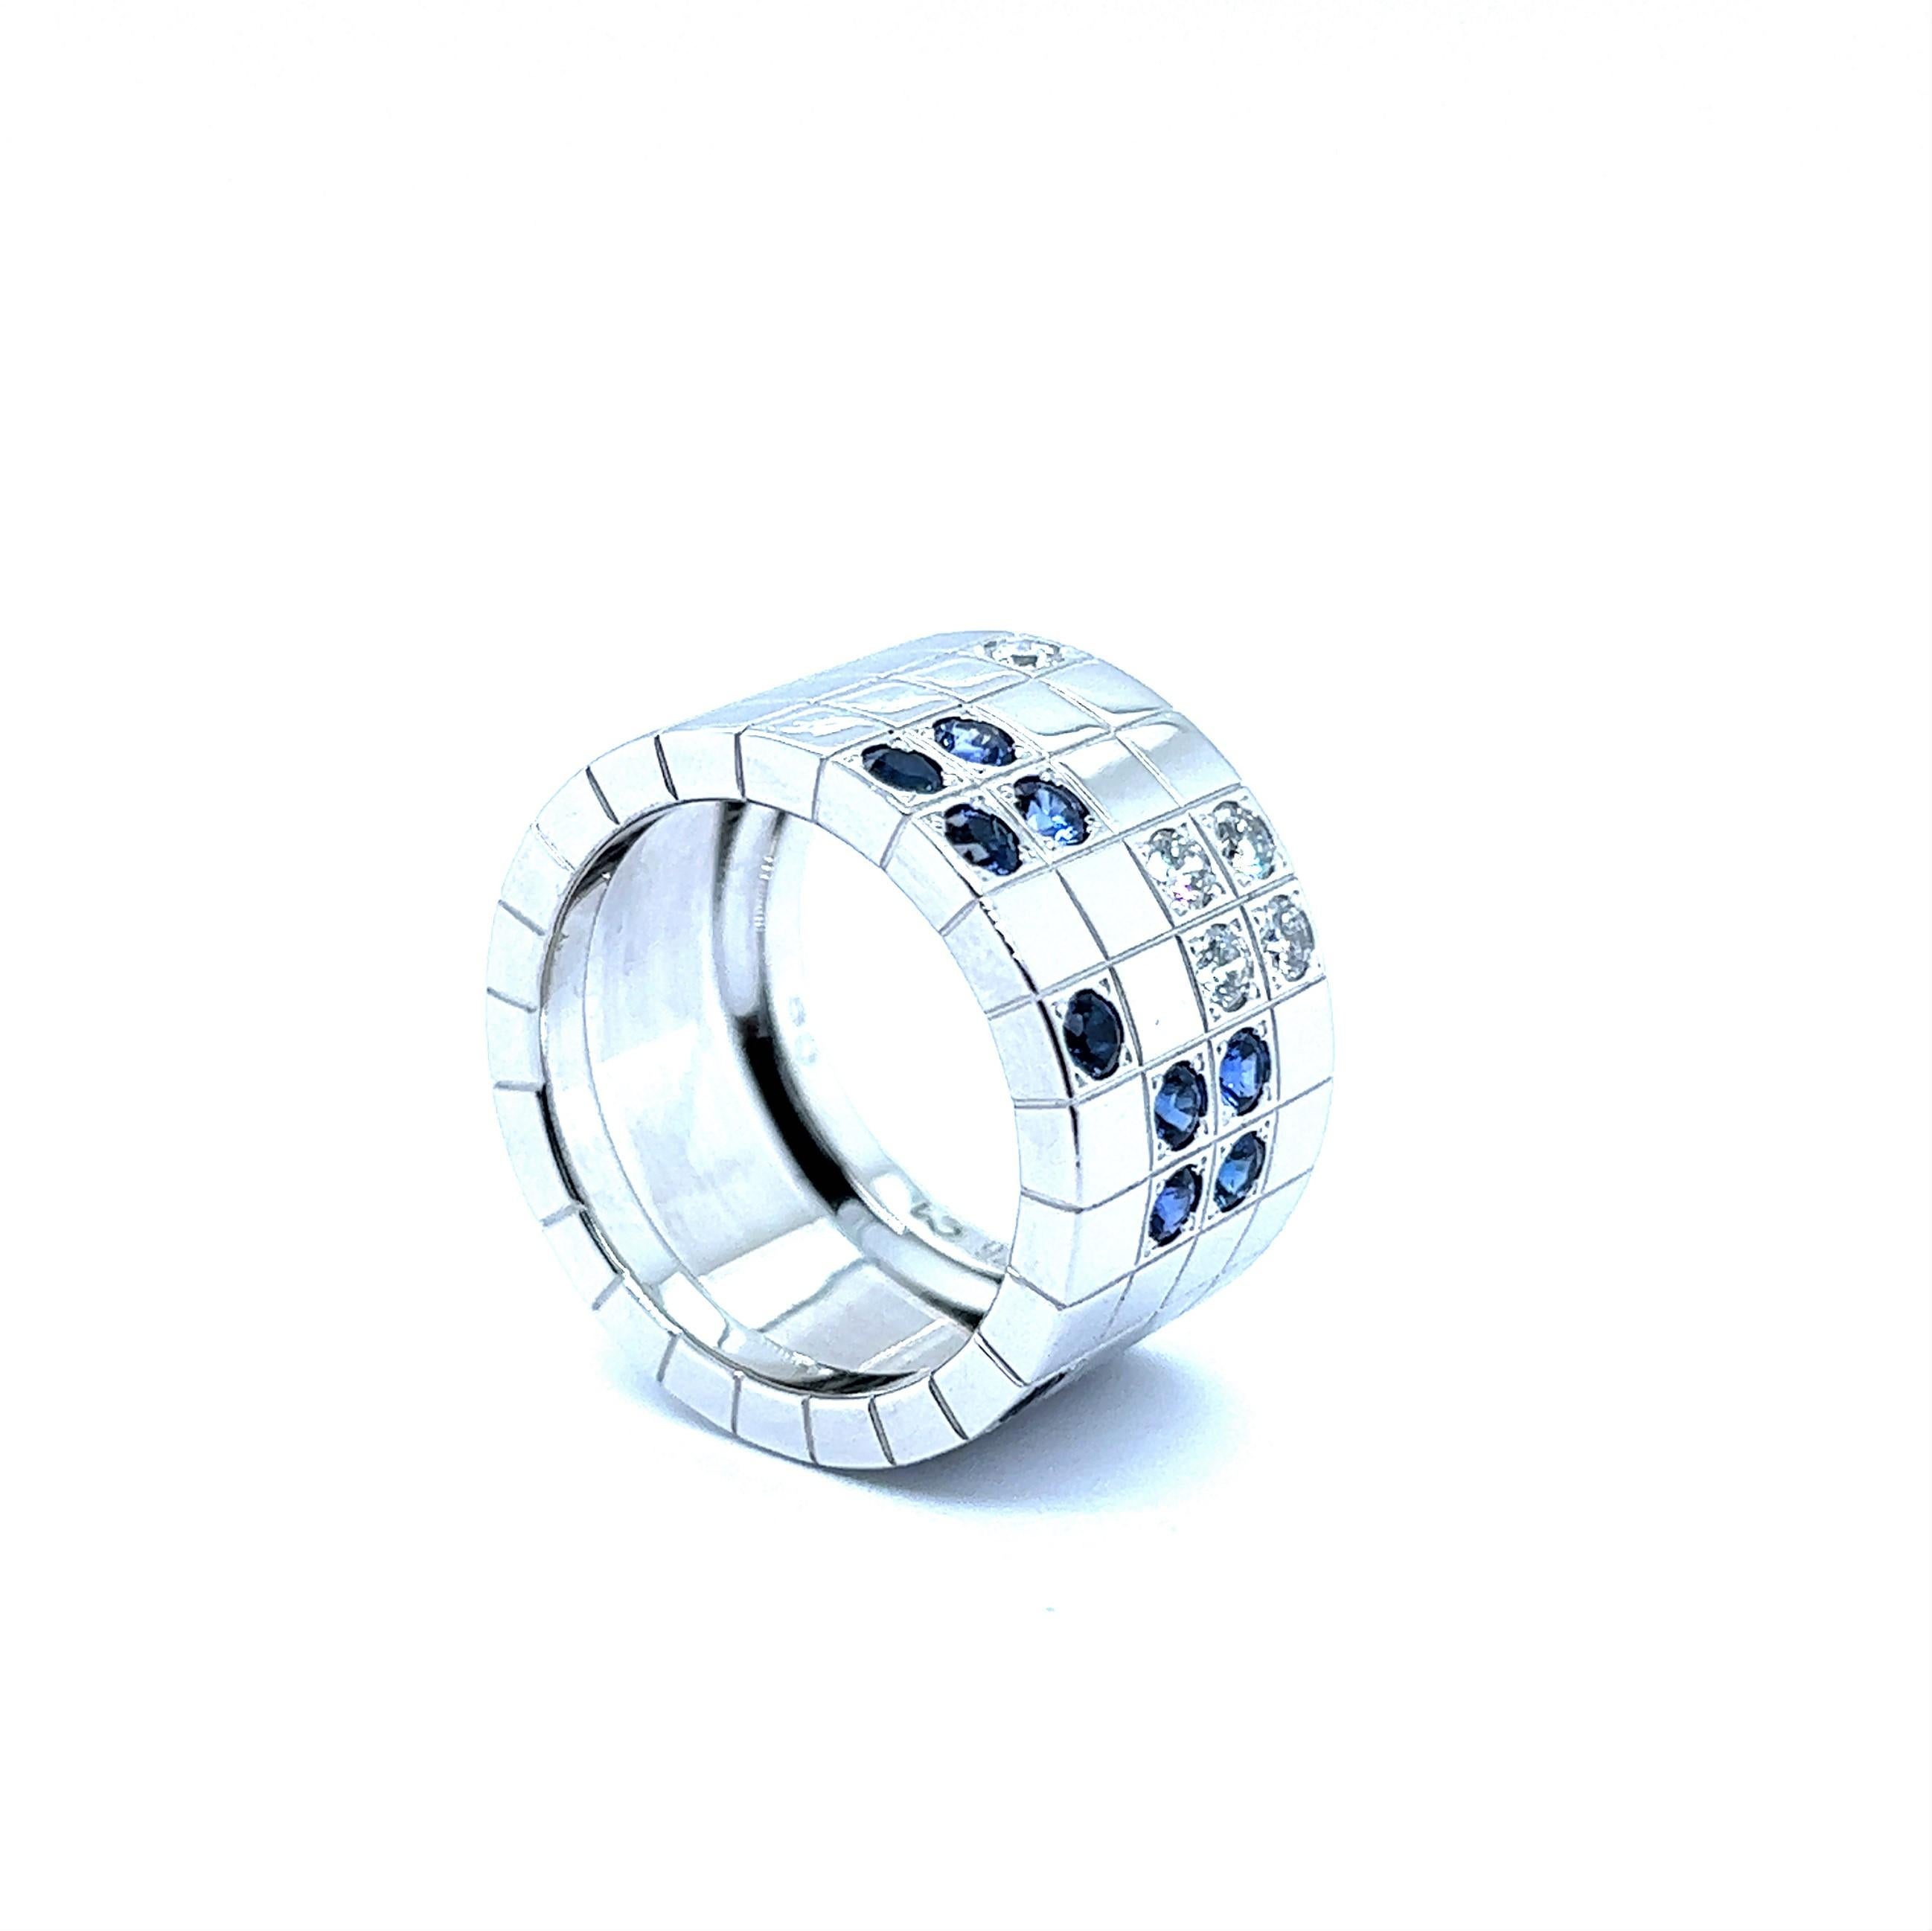 Ein außergewöhnlicher Ring mit Saphiren und Diamanten aus der Kollektion Lanières des berühmten Juwelierhauses Cartier. 

Dieses exquisite Stück ist mit einem stilvollen geometrischen Muster aus massivem 18-karätigem Weißgold versehen, das für einen